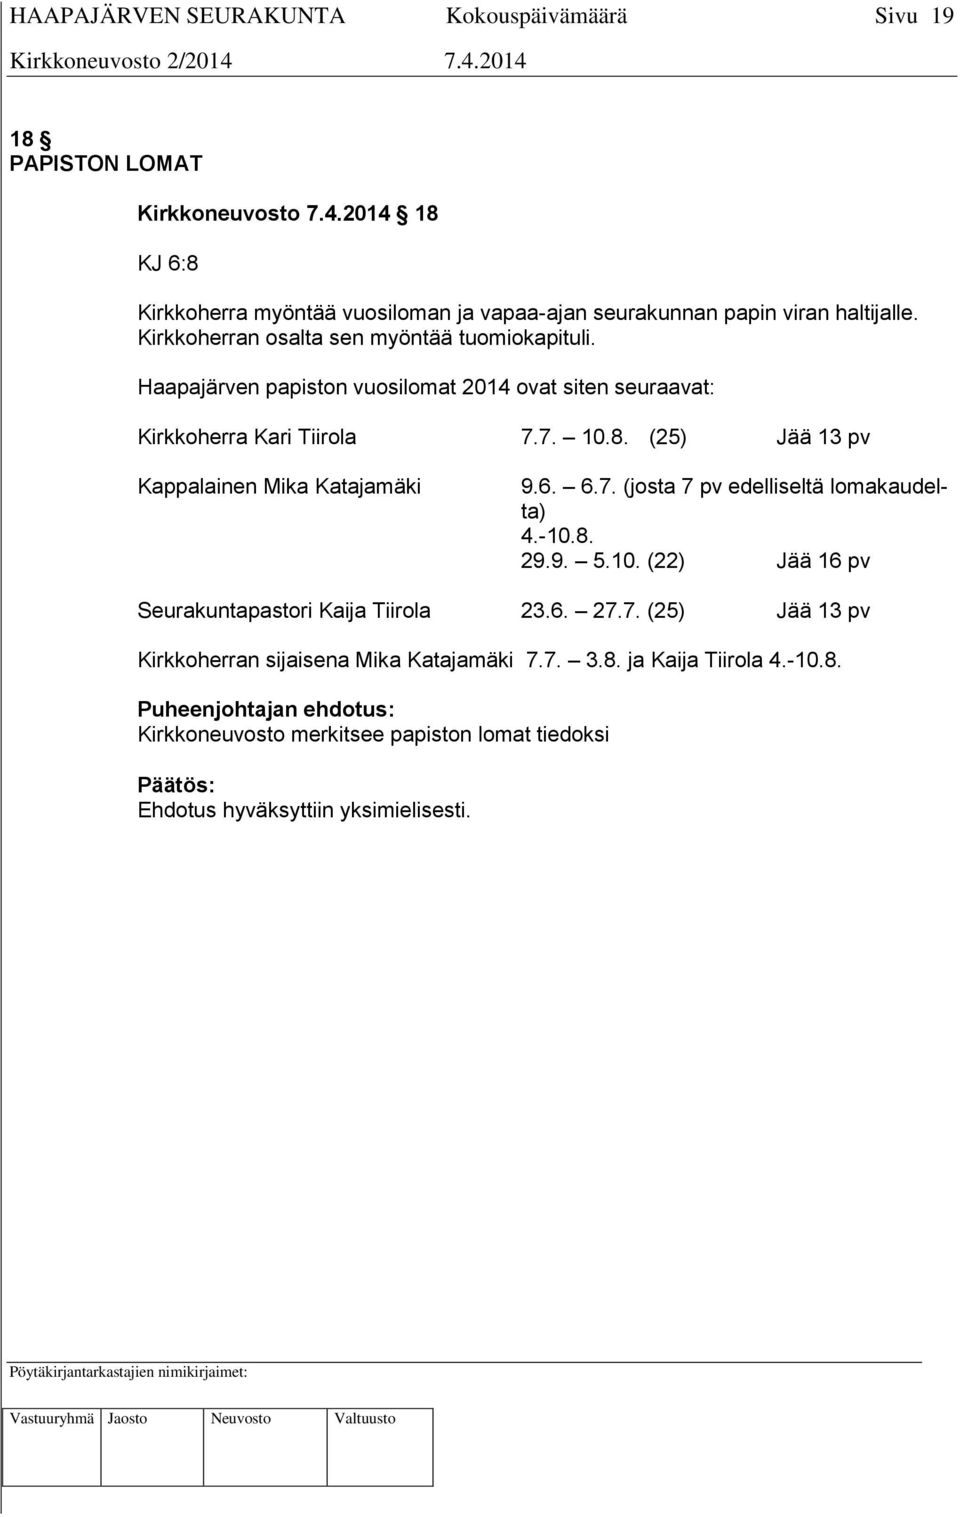 (25) Jää 13 pv Kappalainen Mika Katajamäki 9.6. 6.7. (josta 7 pv edelliseltä lomakaudelta) 4.-10.8. 29.9. 5.10. (22) Jää 16 pv Seurakuntapastori Kaija Tiirola 23.